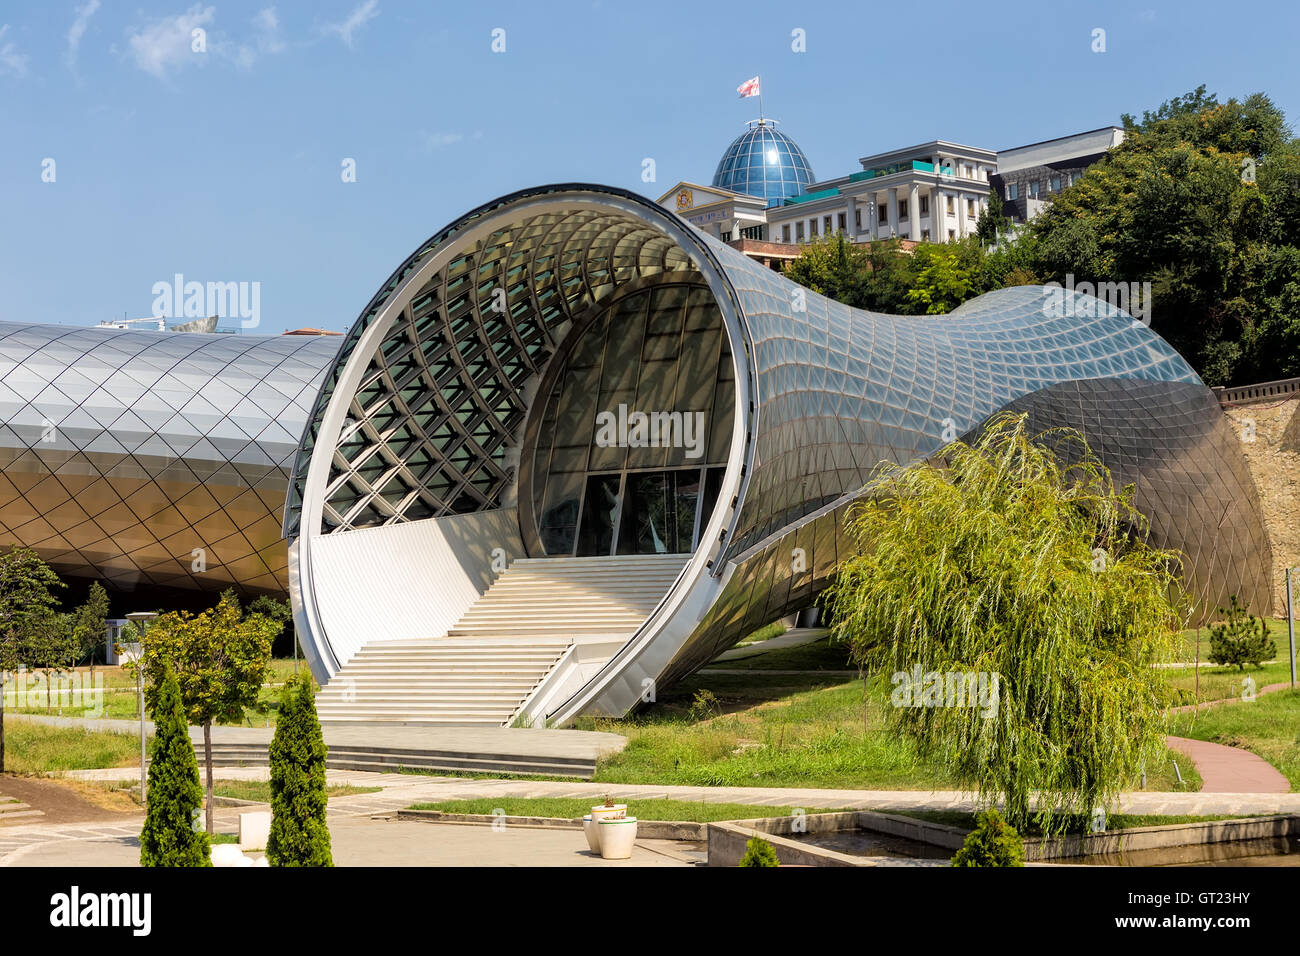 Tbilisi, Georgia - 18 agosto 2016: il Teatro della Musica e del dramma, Exhibition Hall sono il moderno Tbilisi, situato nel Parco Rike, G Foto Stock